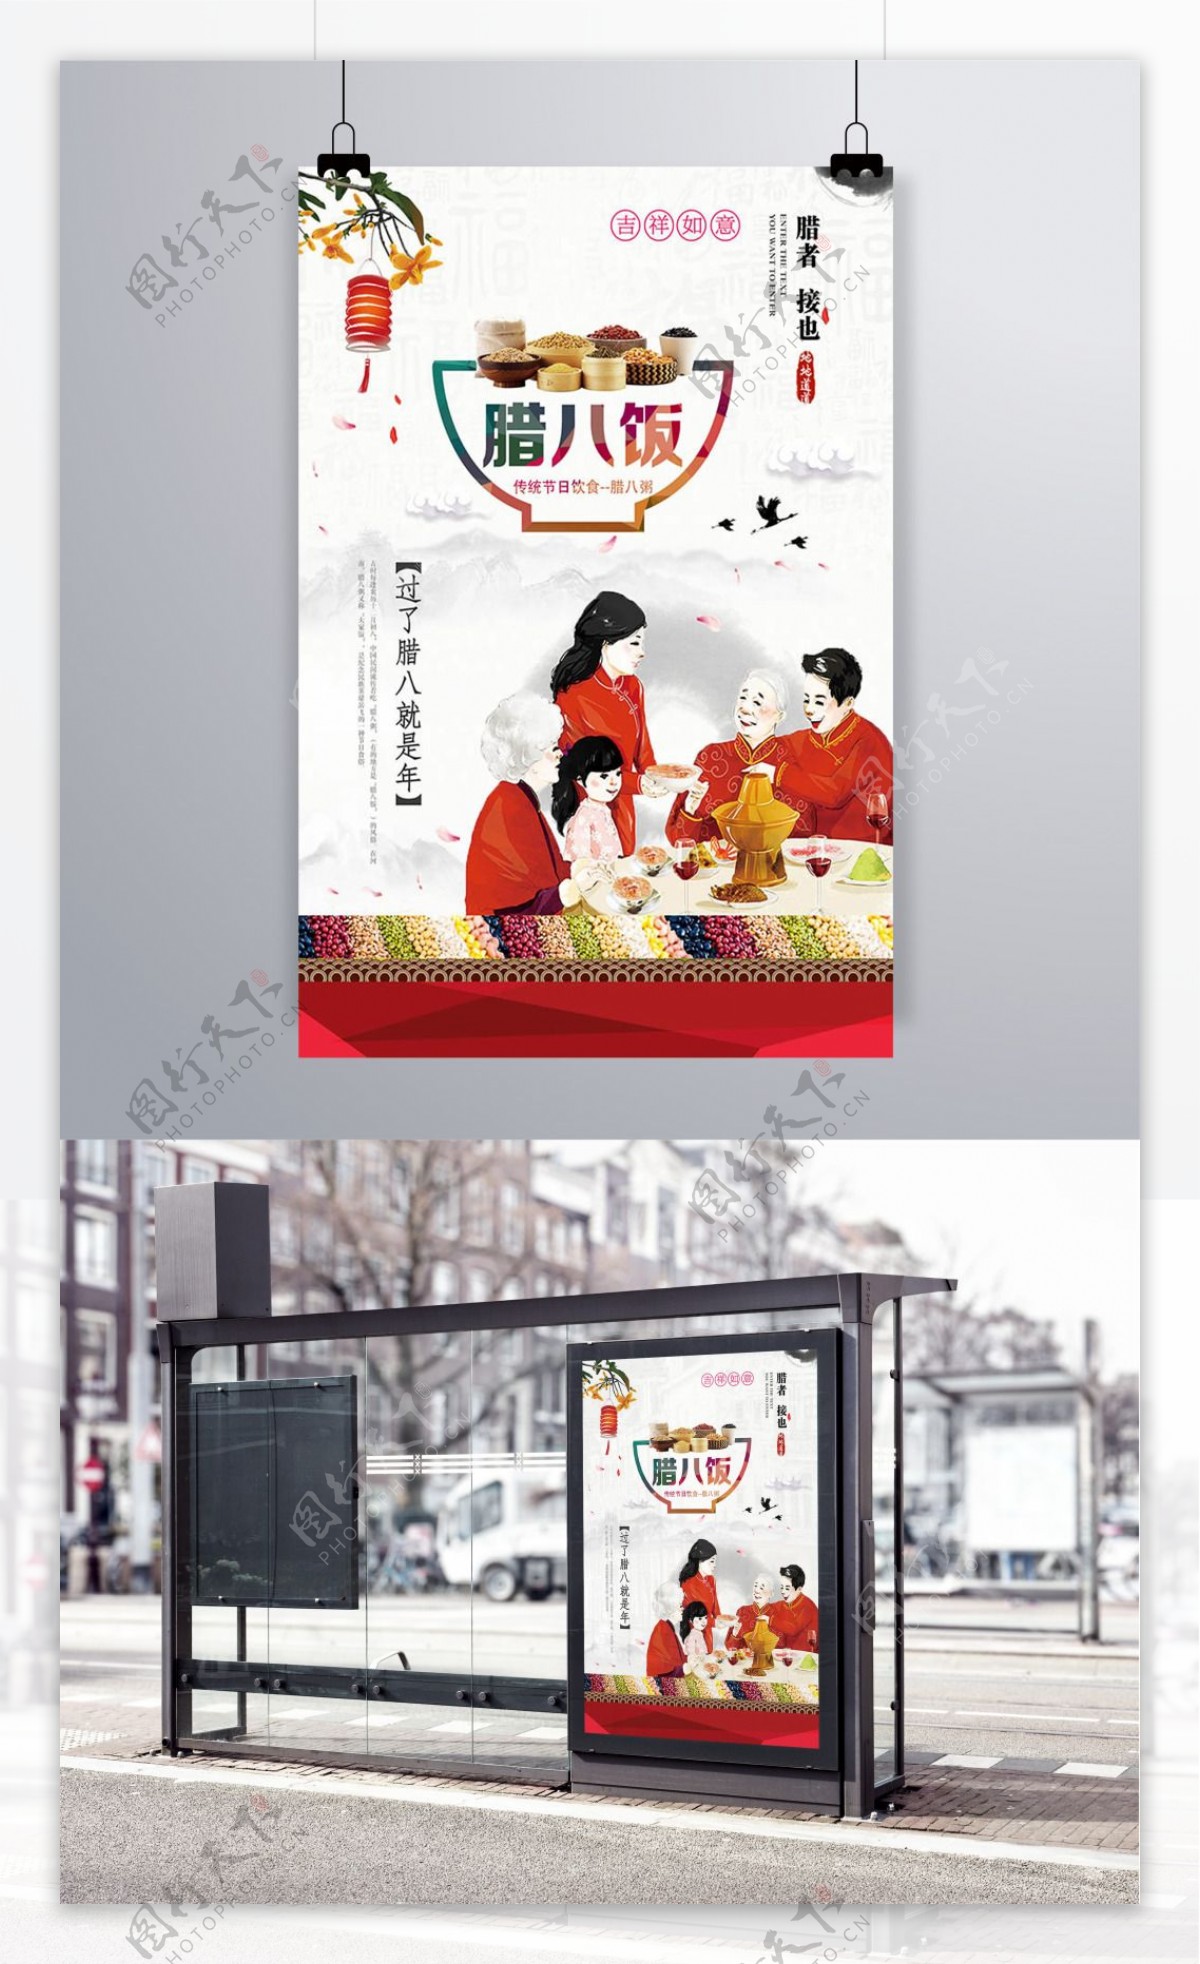 中国传统节日腊八饭团圆海报